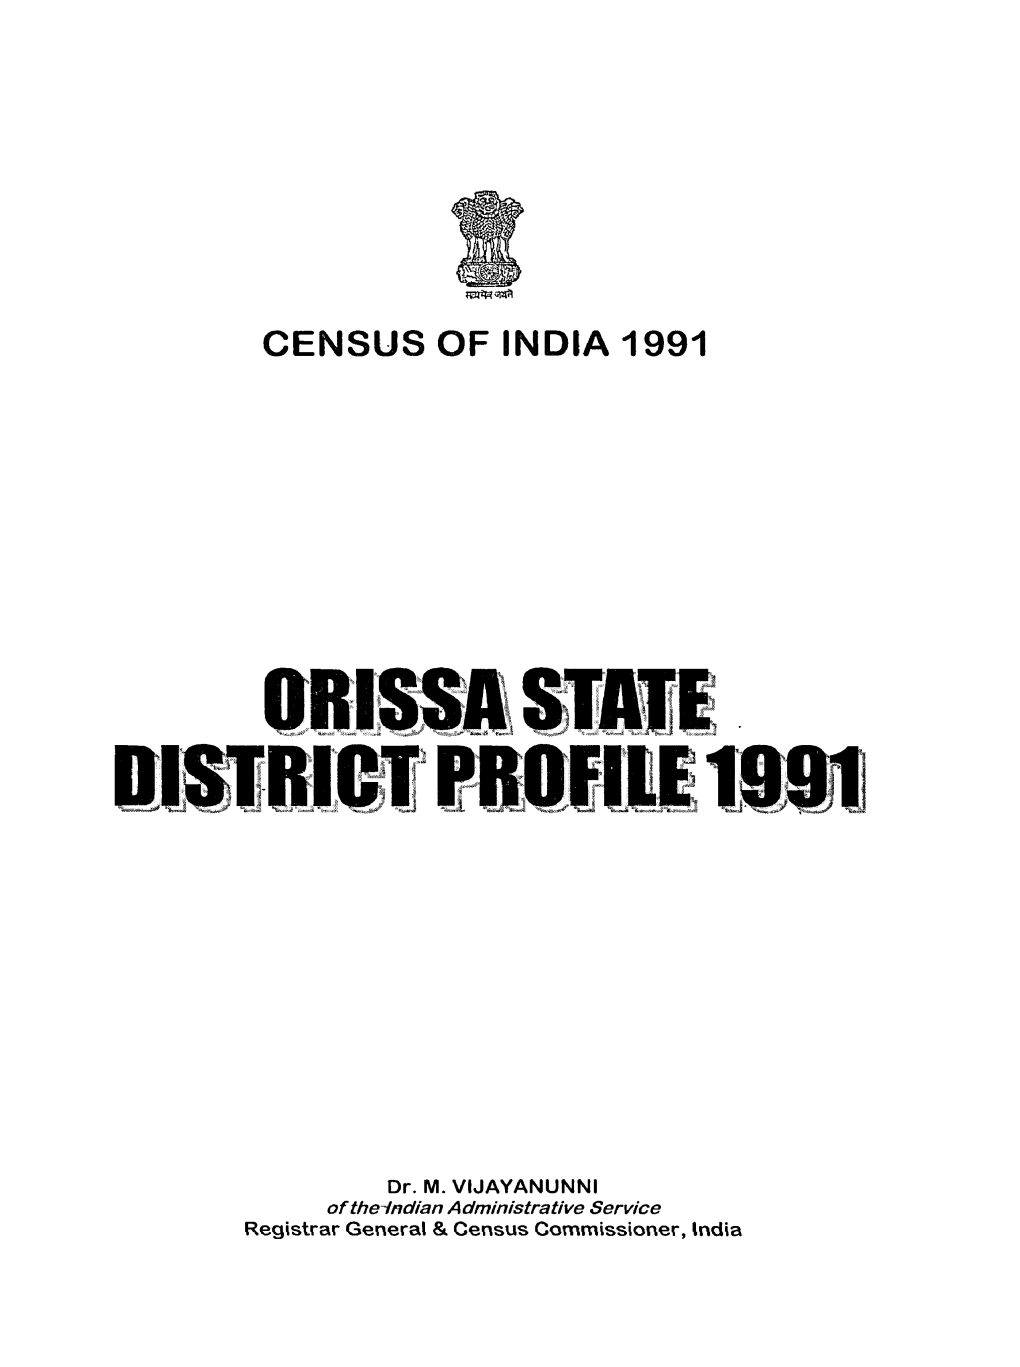 Census of India 1991